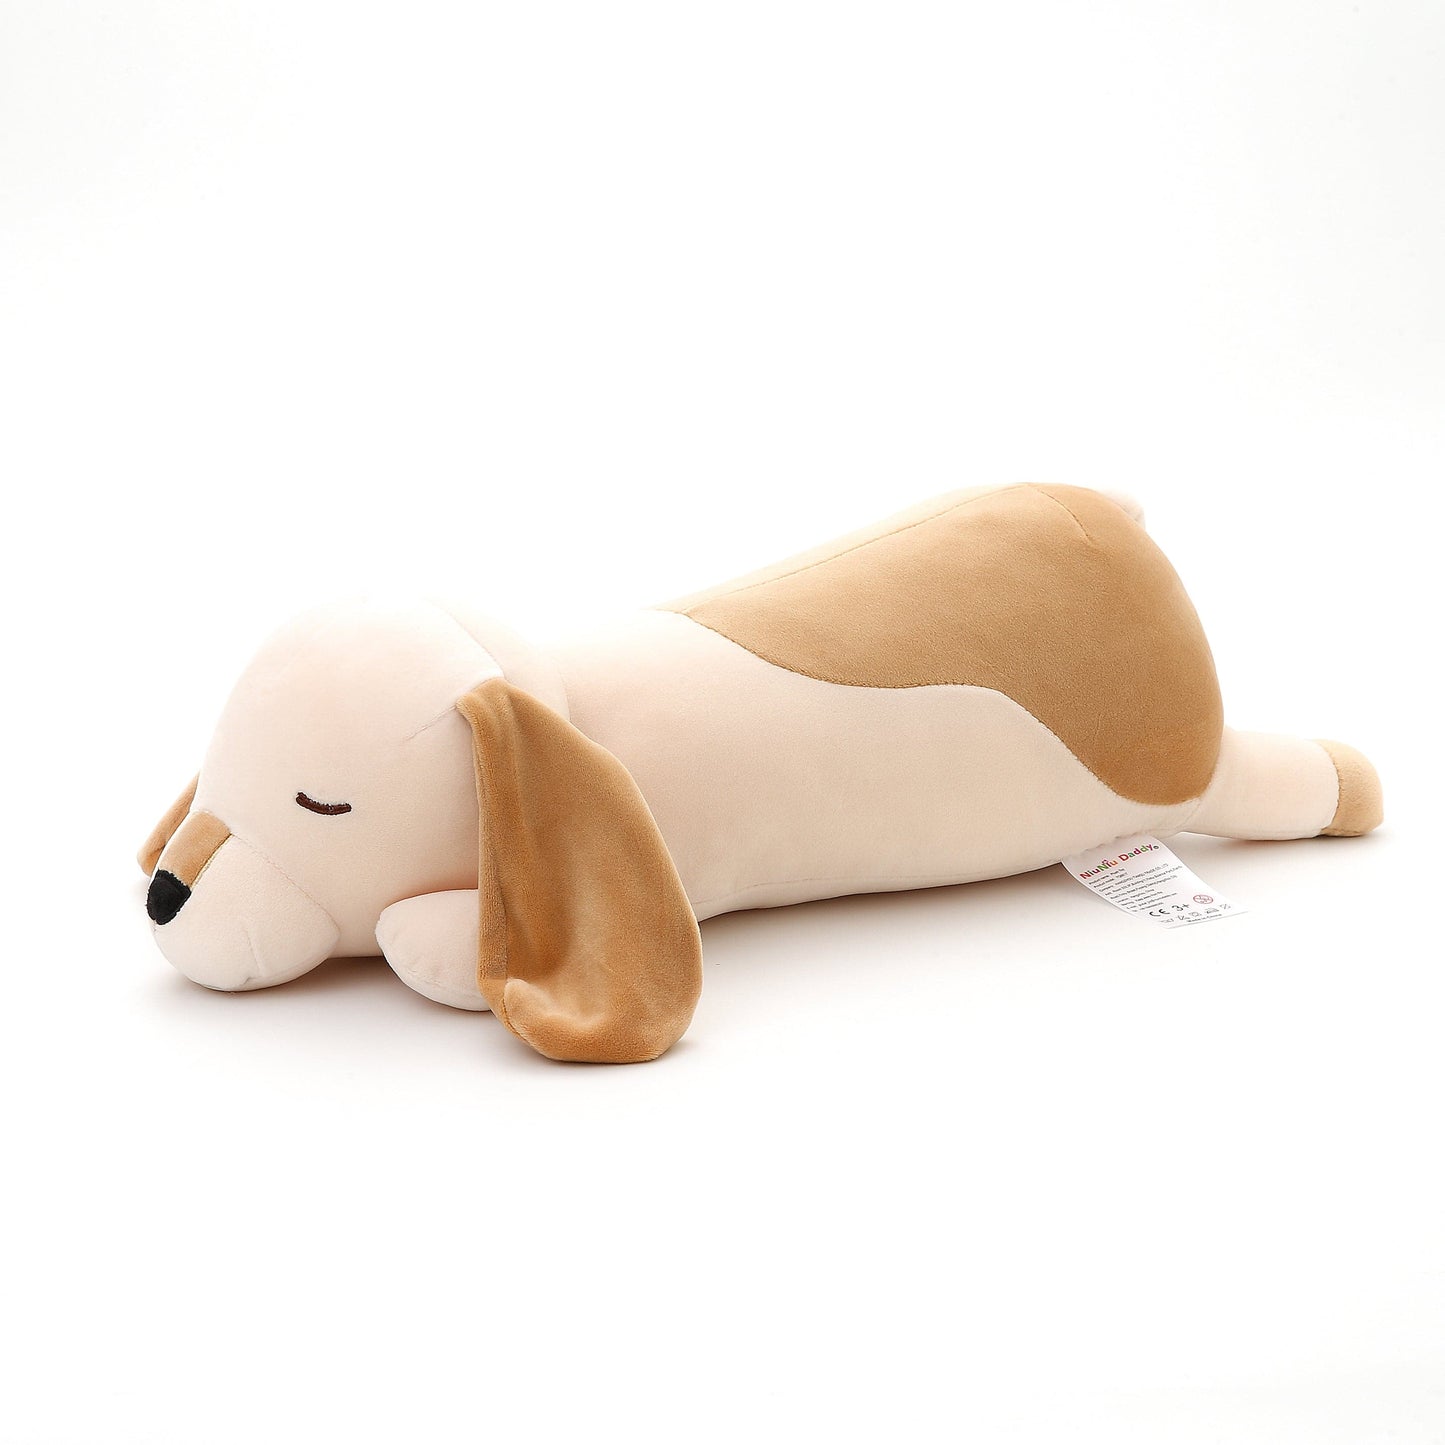 Niuniudaddy™ Stuffed Animal Dog